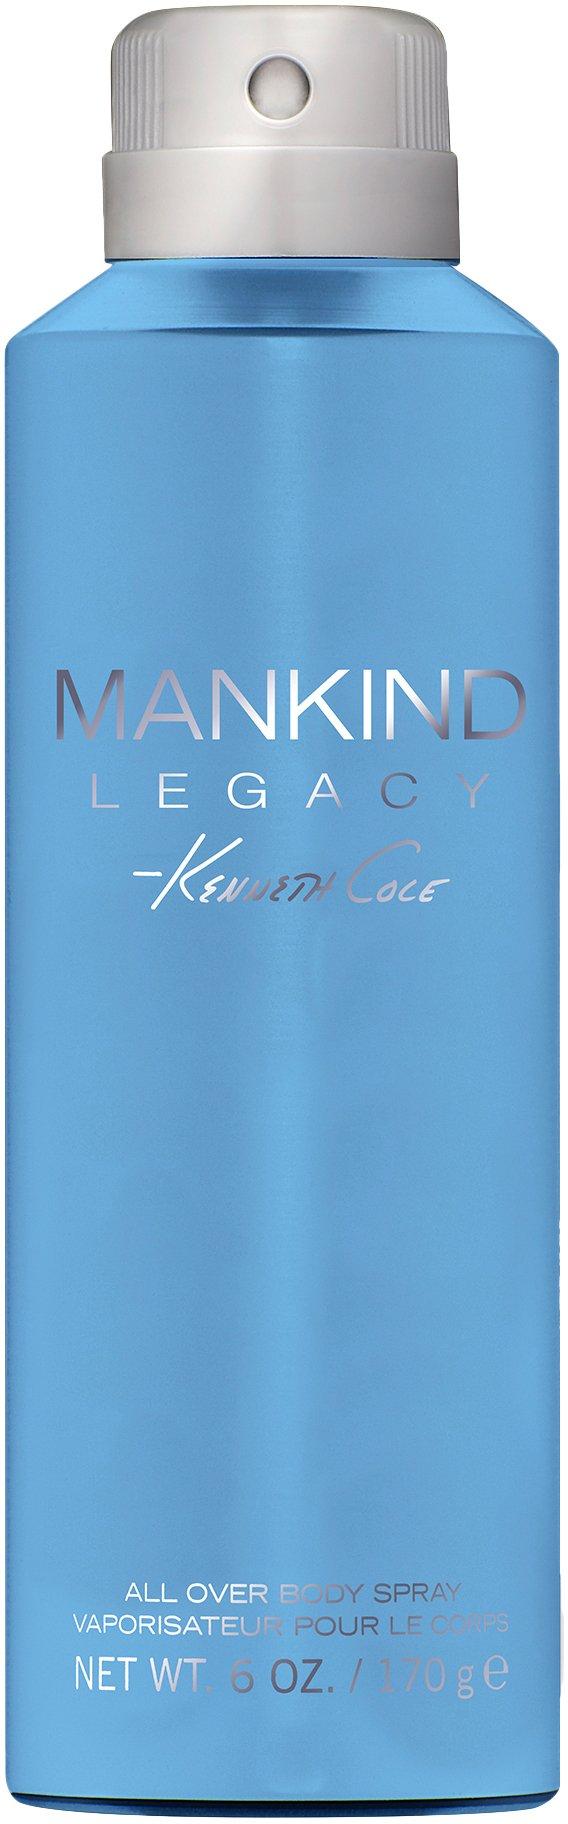 Kenneth Cole Mankind Legacy Mens 6 fl. oz.